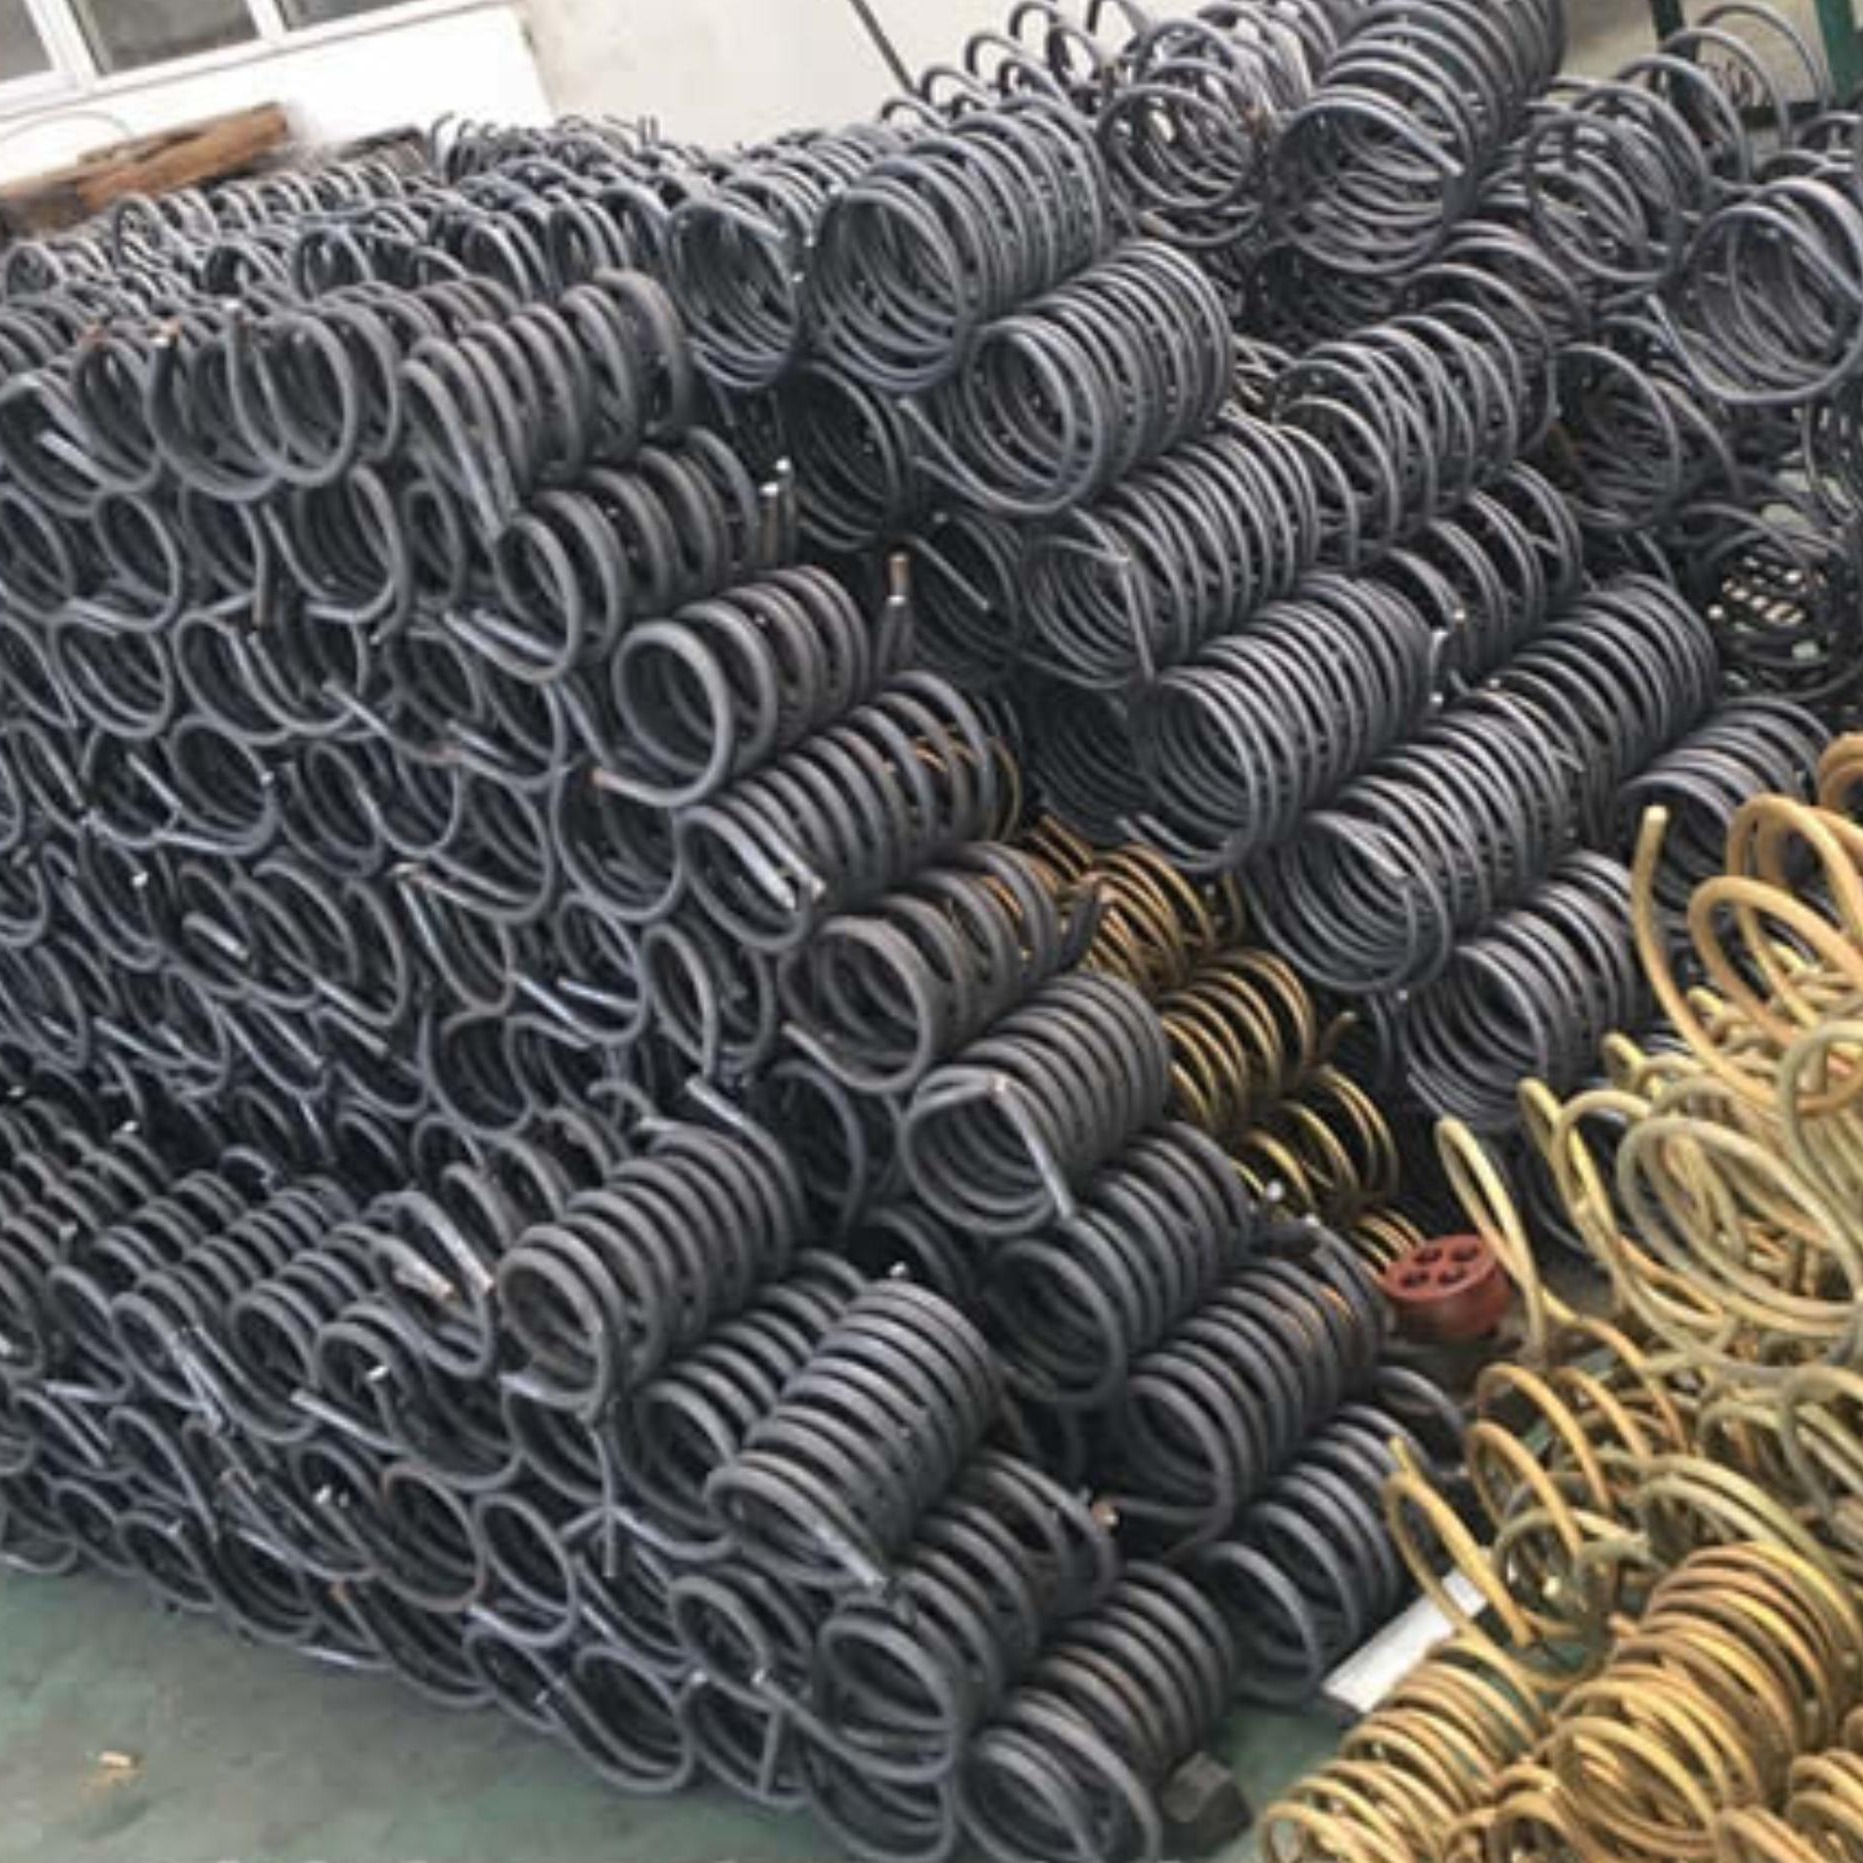 自动铁路轨枕螺旋筋弹簧机生产厂家  重庆至昆明高速铁路轨枕弹簧机厂家直销